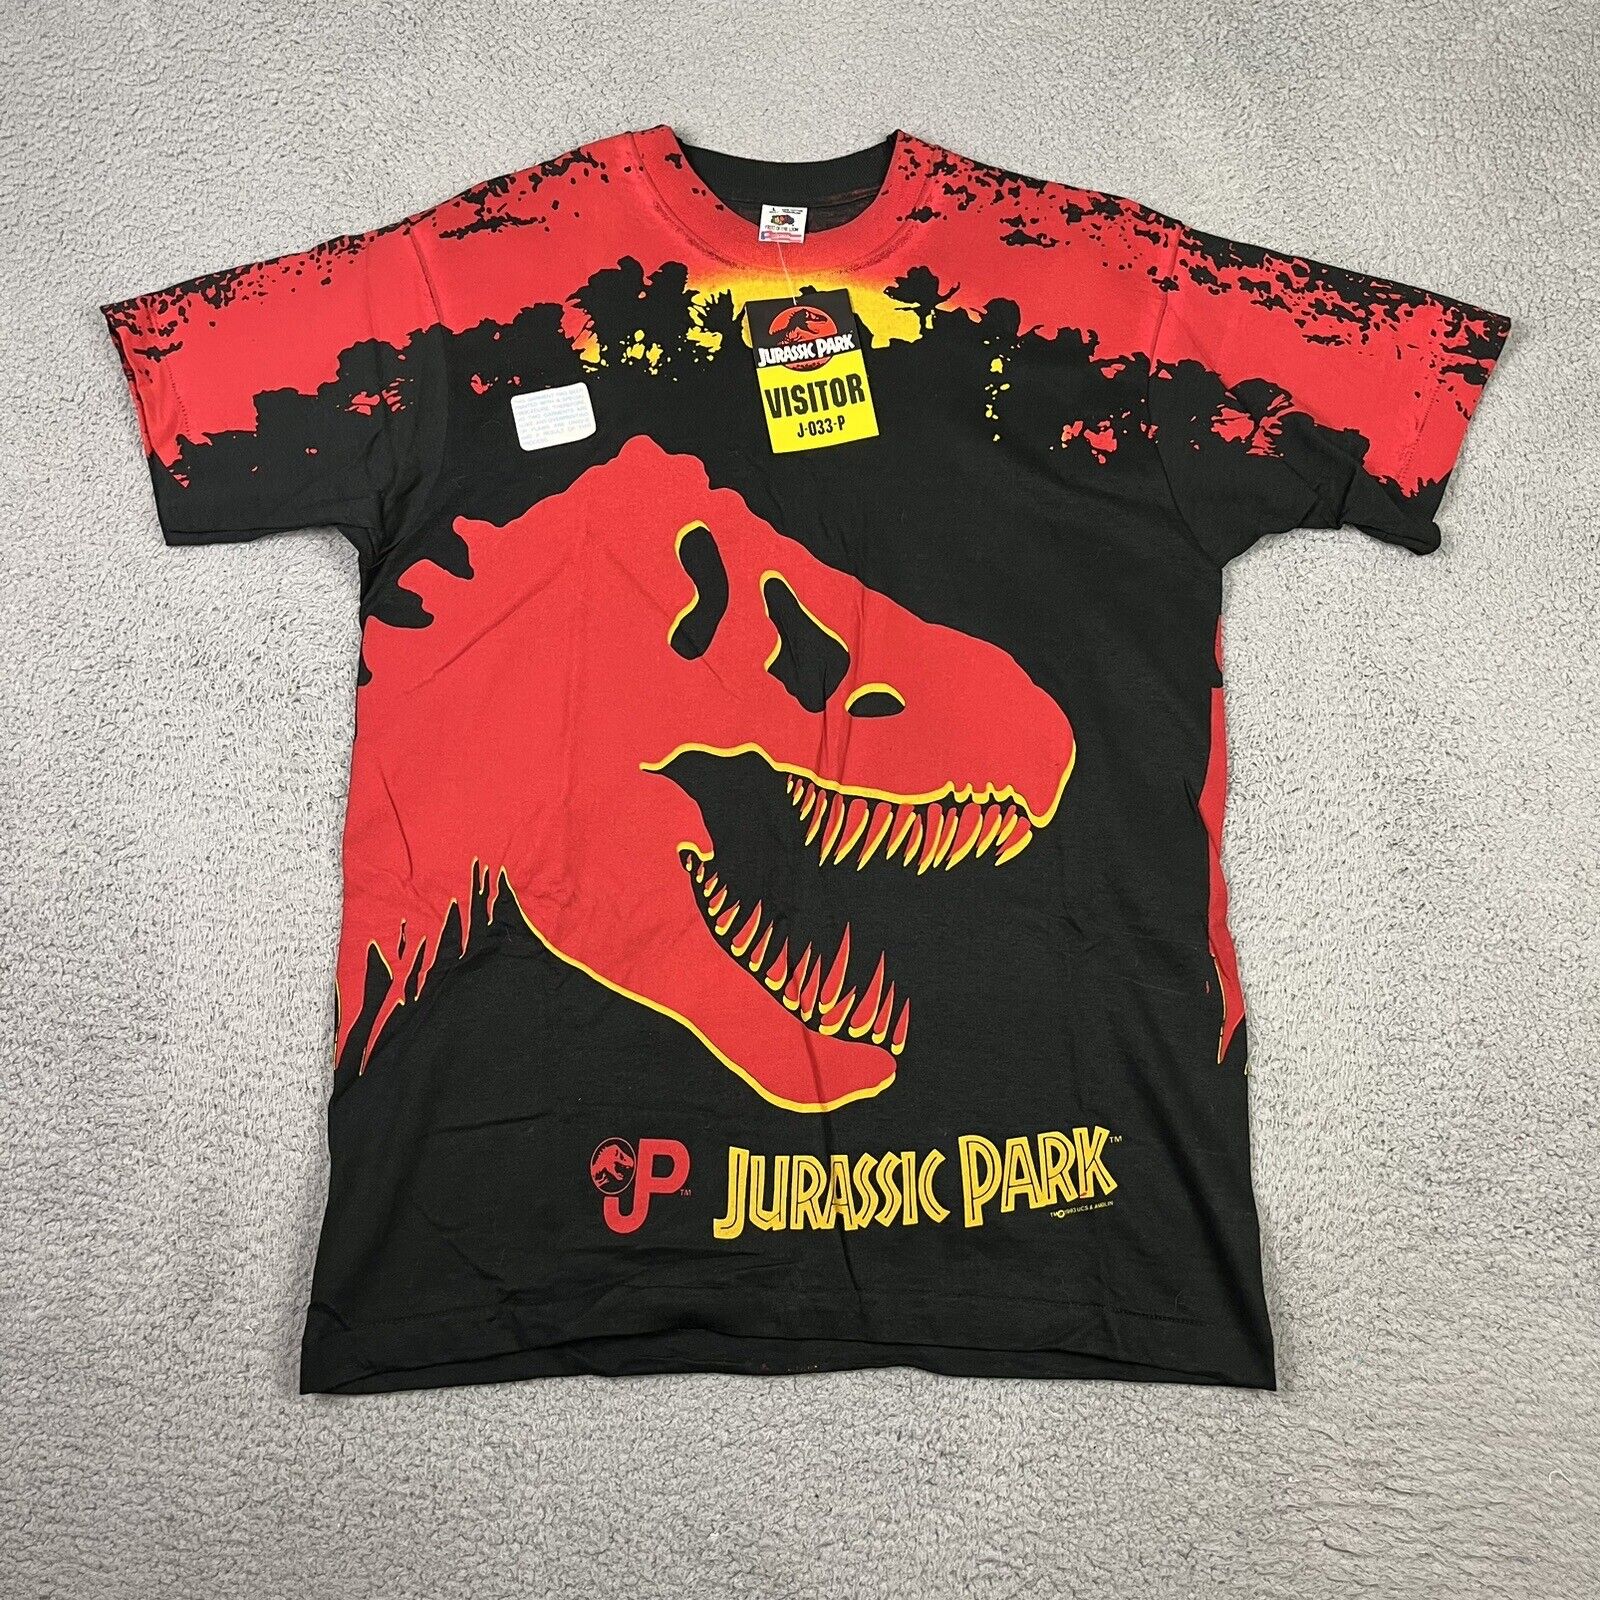 Vintage Jurrasic Park Shirt Mens Large All Over Print NEW Deadstock 1993